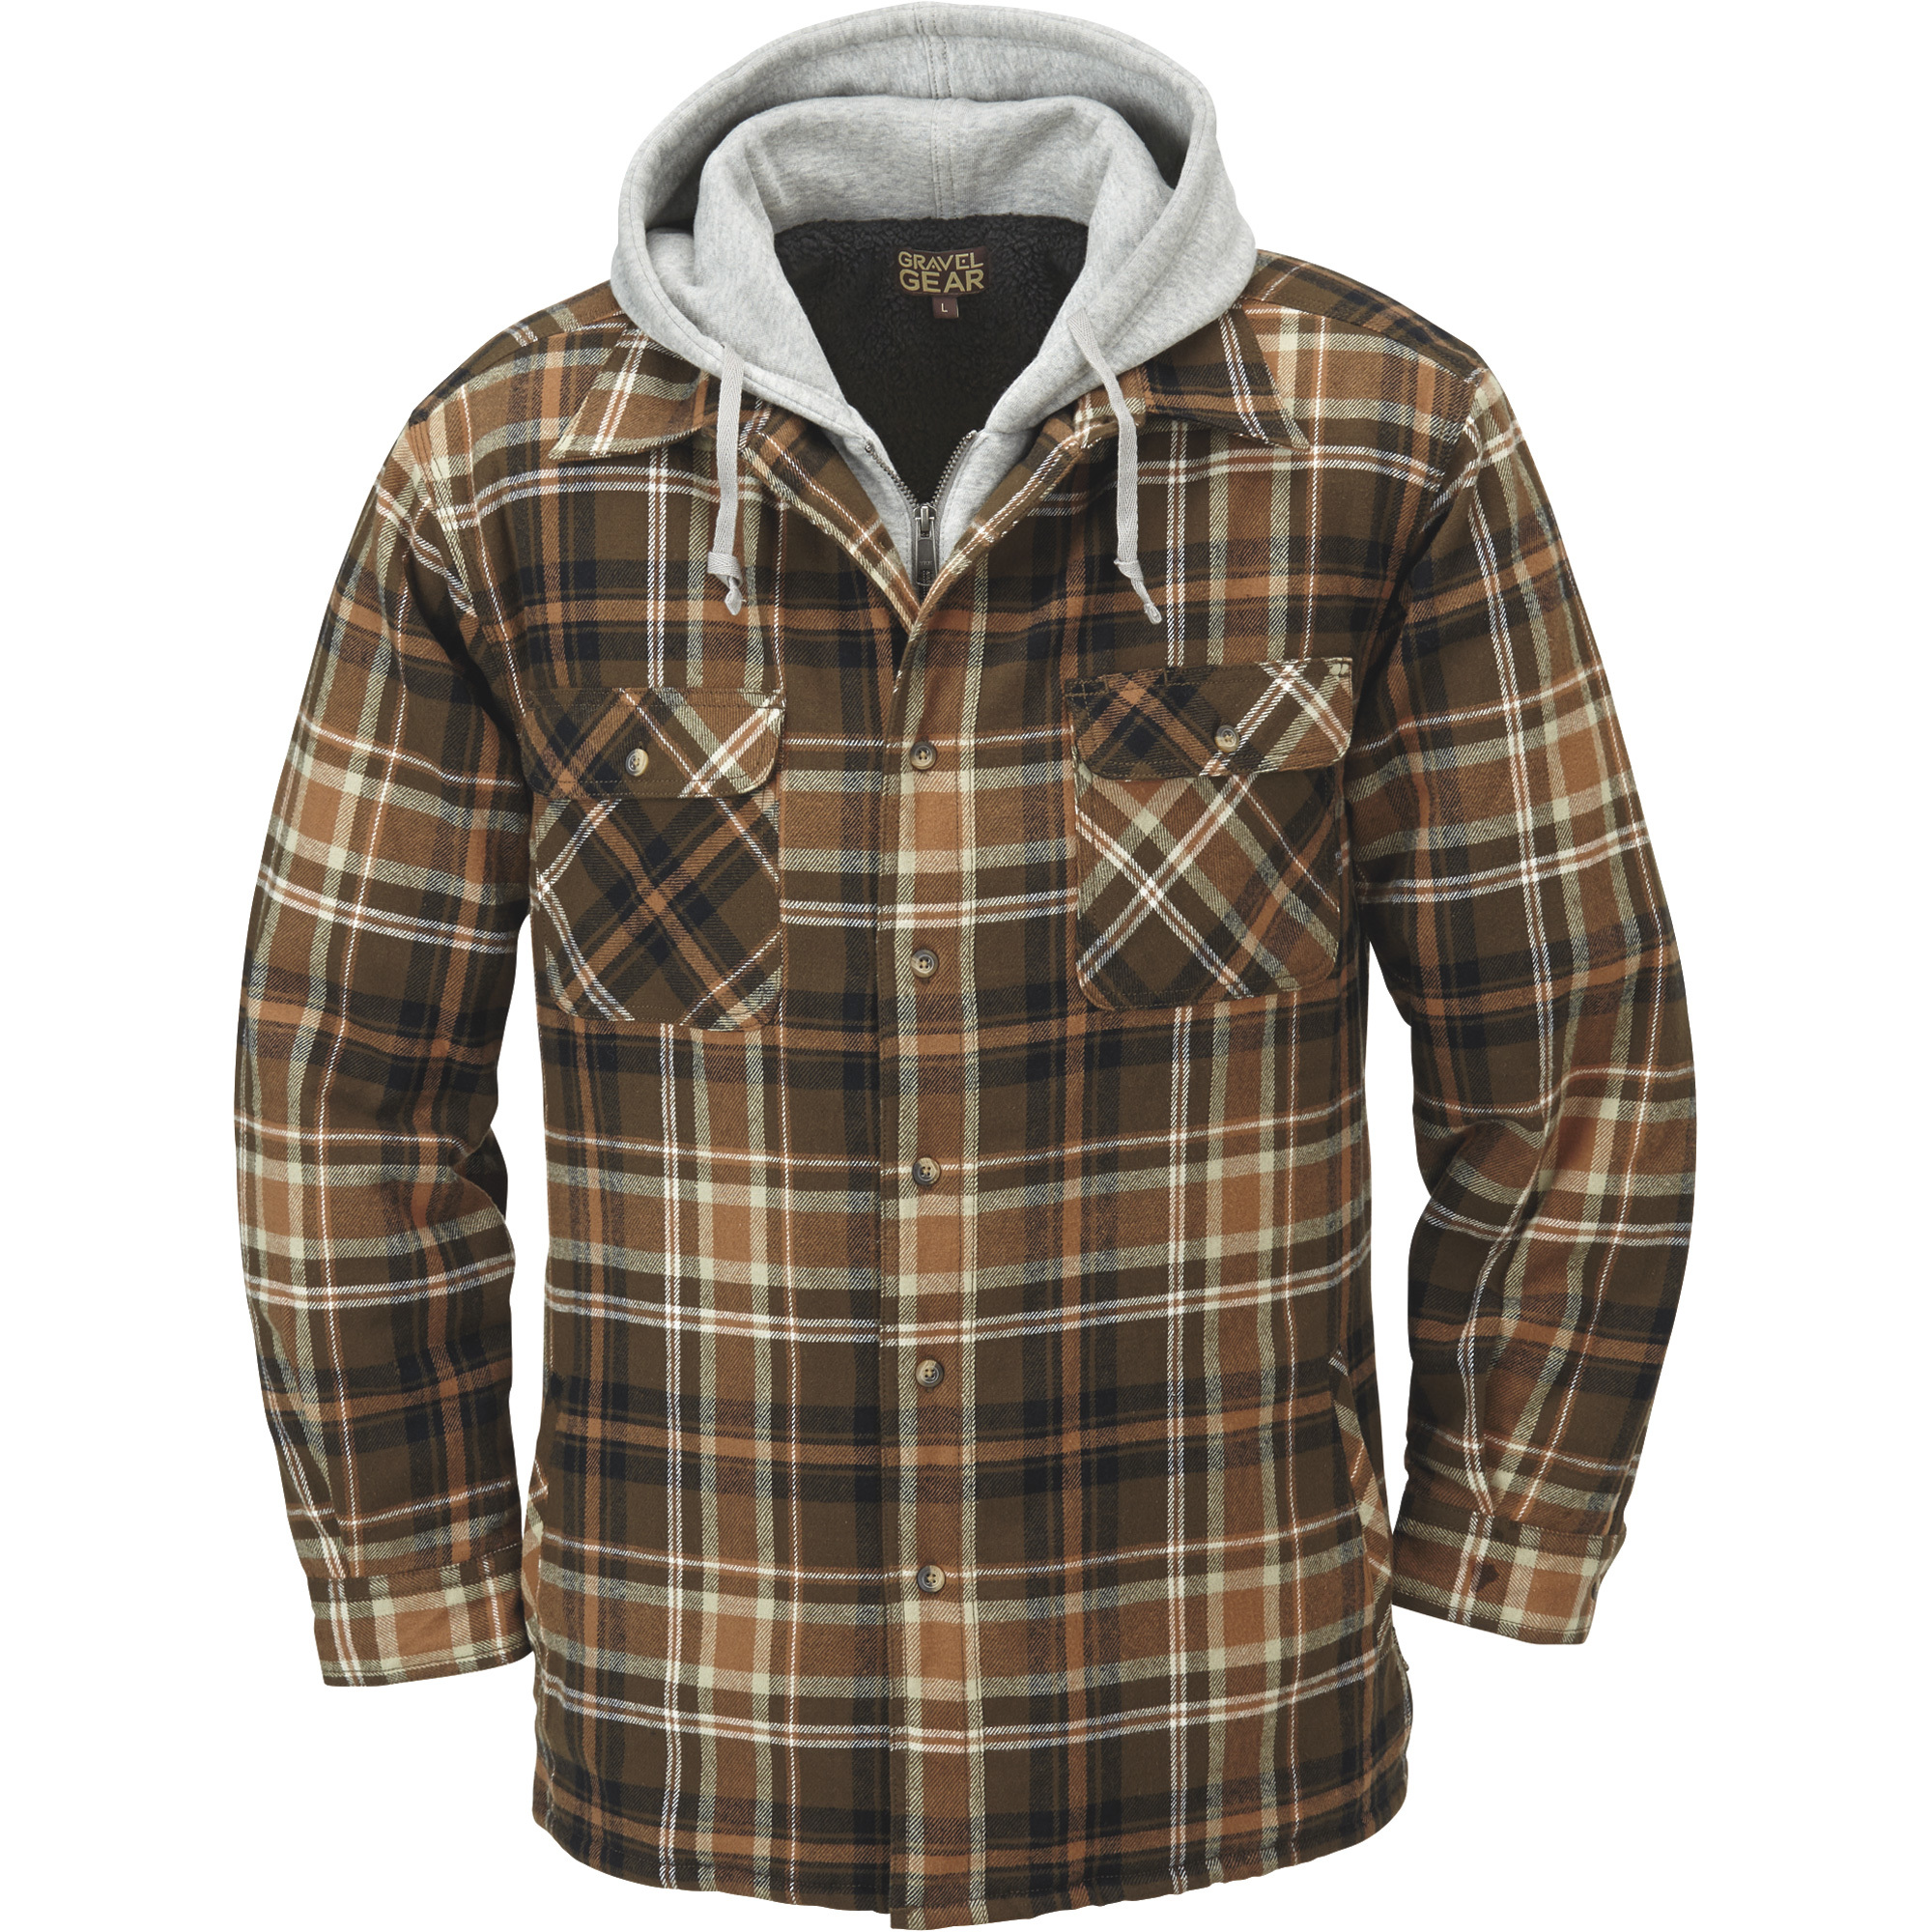 Gravel Gear Sherpa-Lined Hooded Flannel Shirt Jacket â Medium, Tan